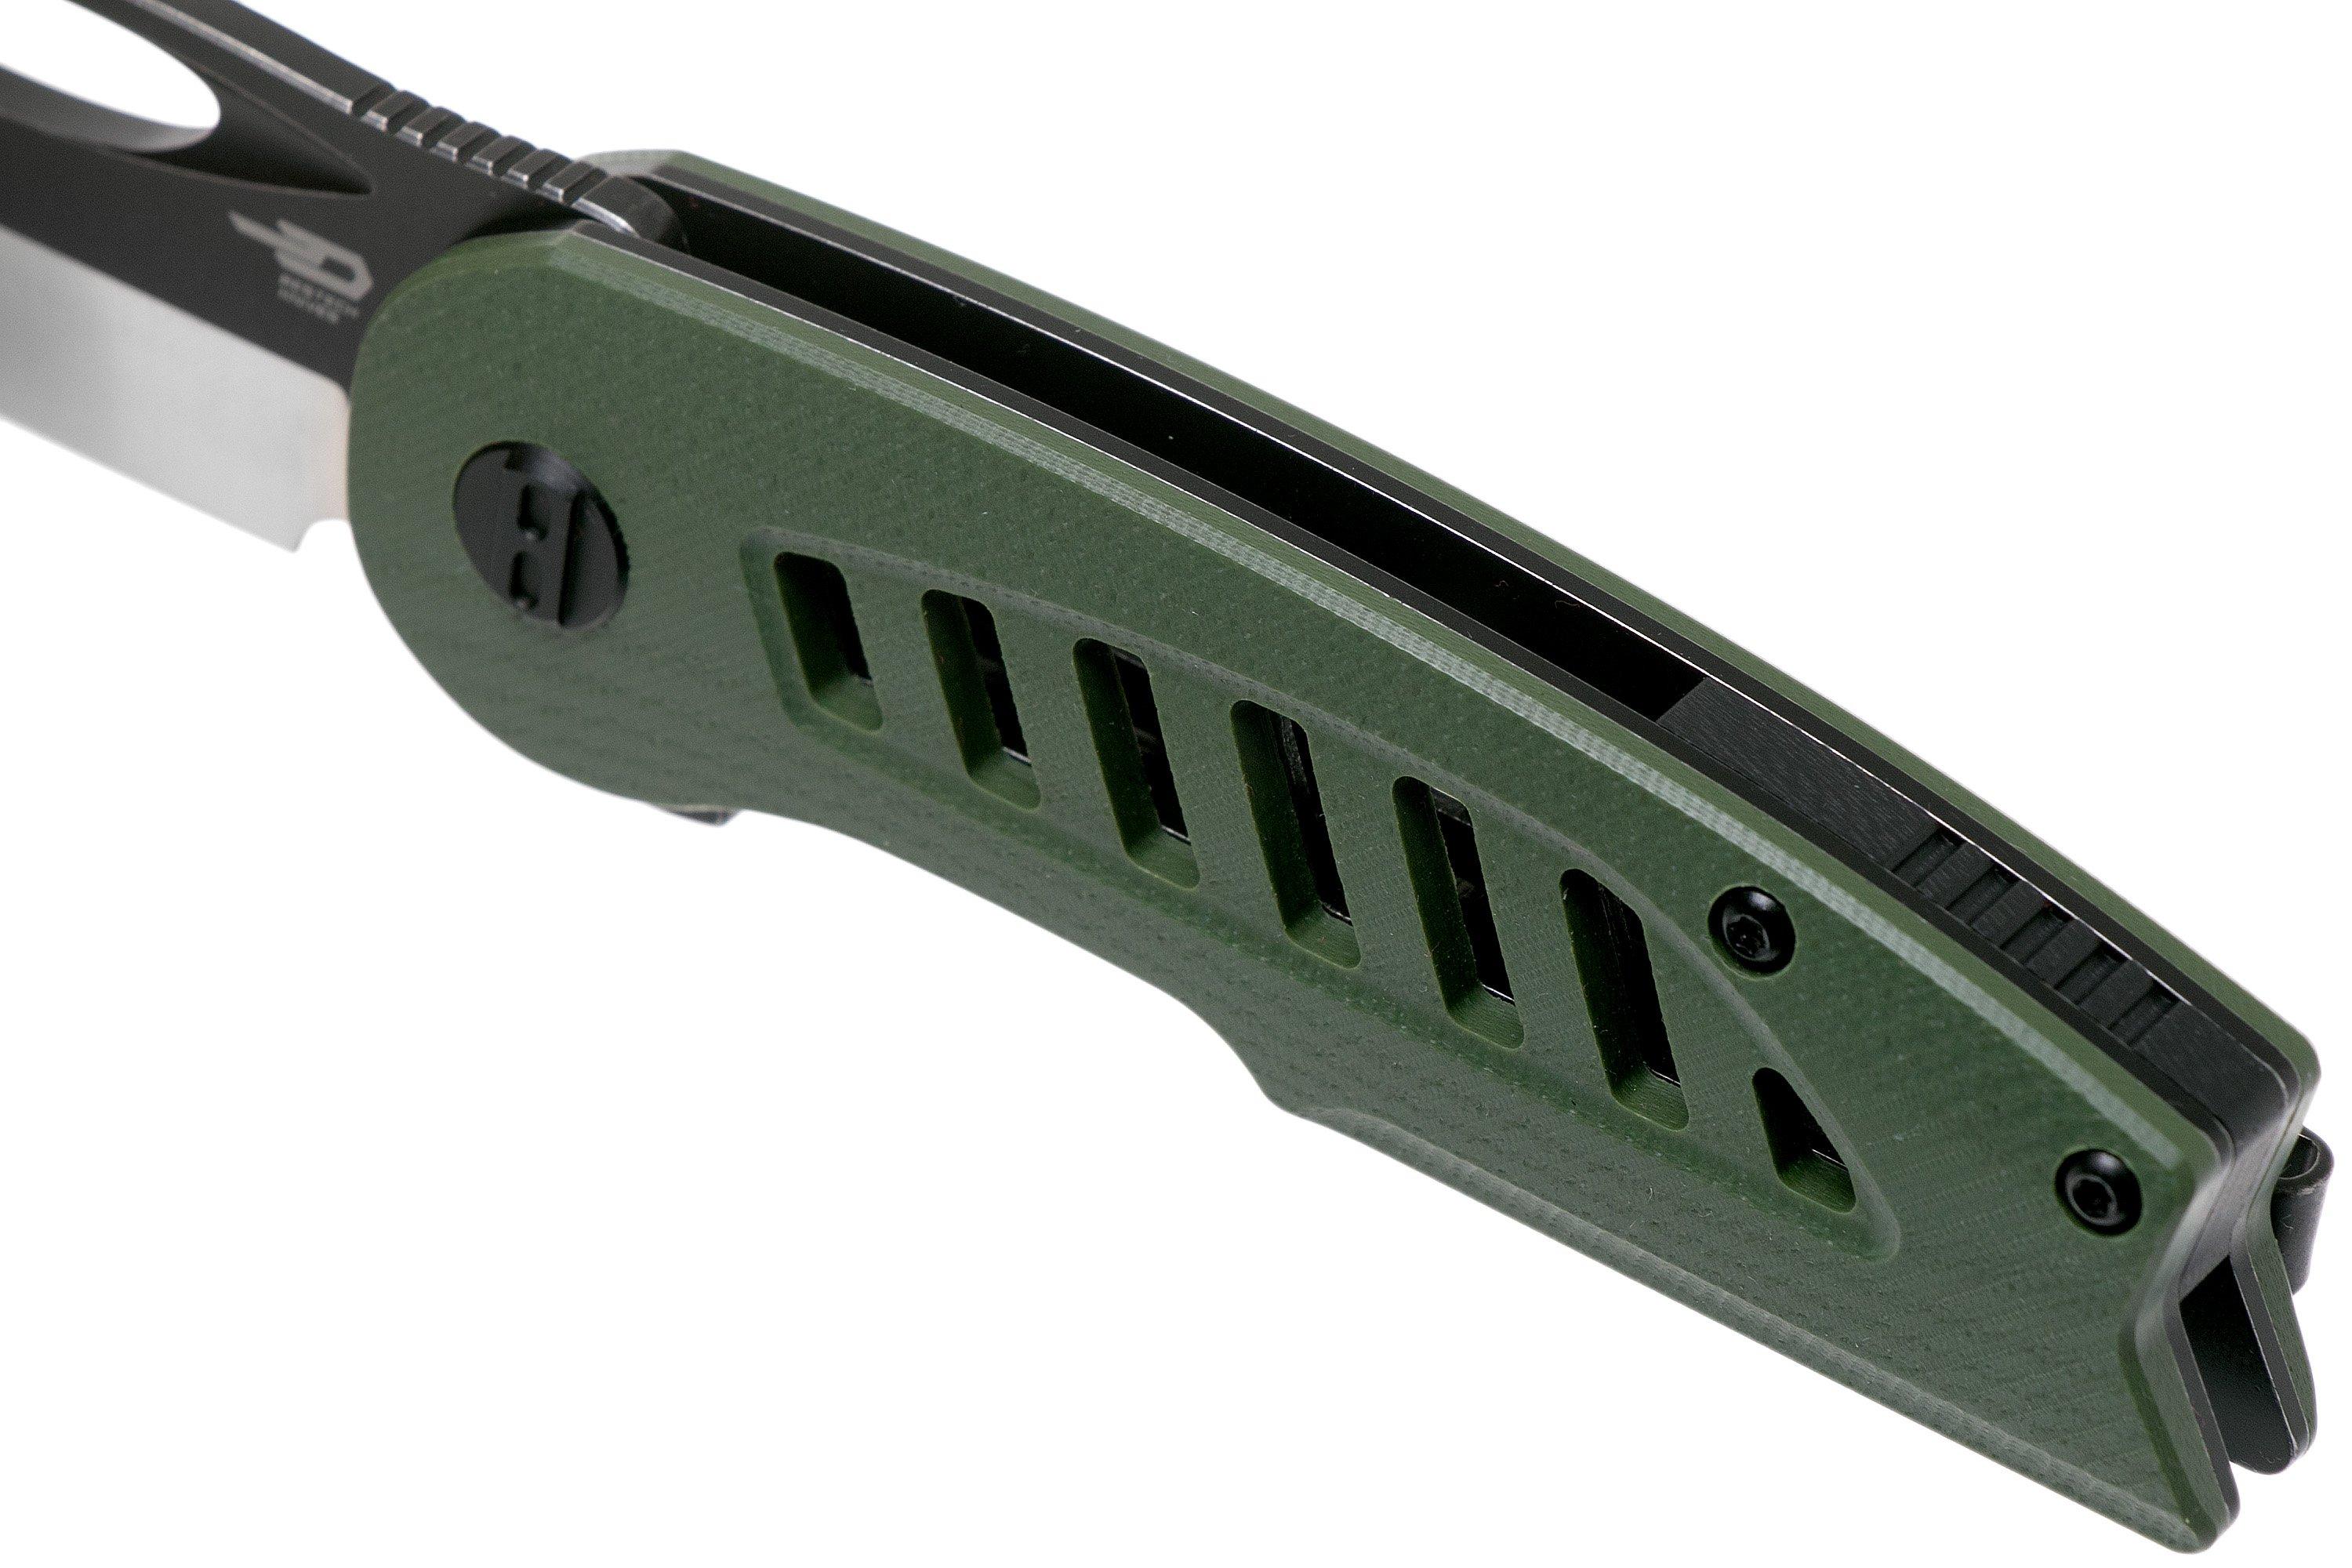 Bestech Explorer BG37B Green G10, Two Tone pocket knife ...